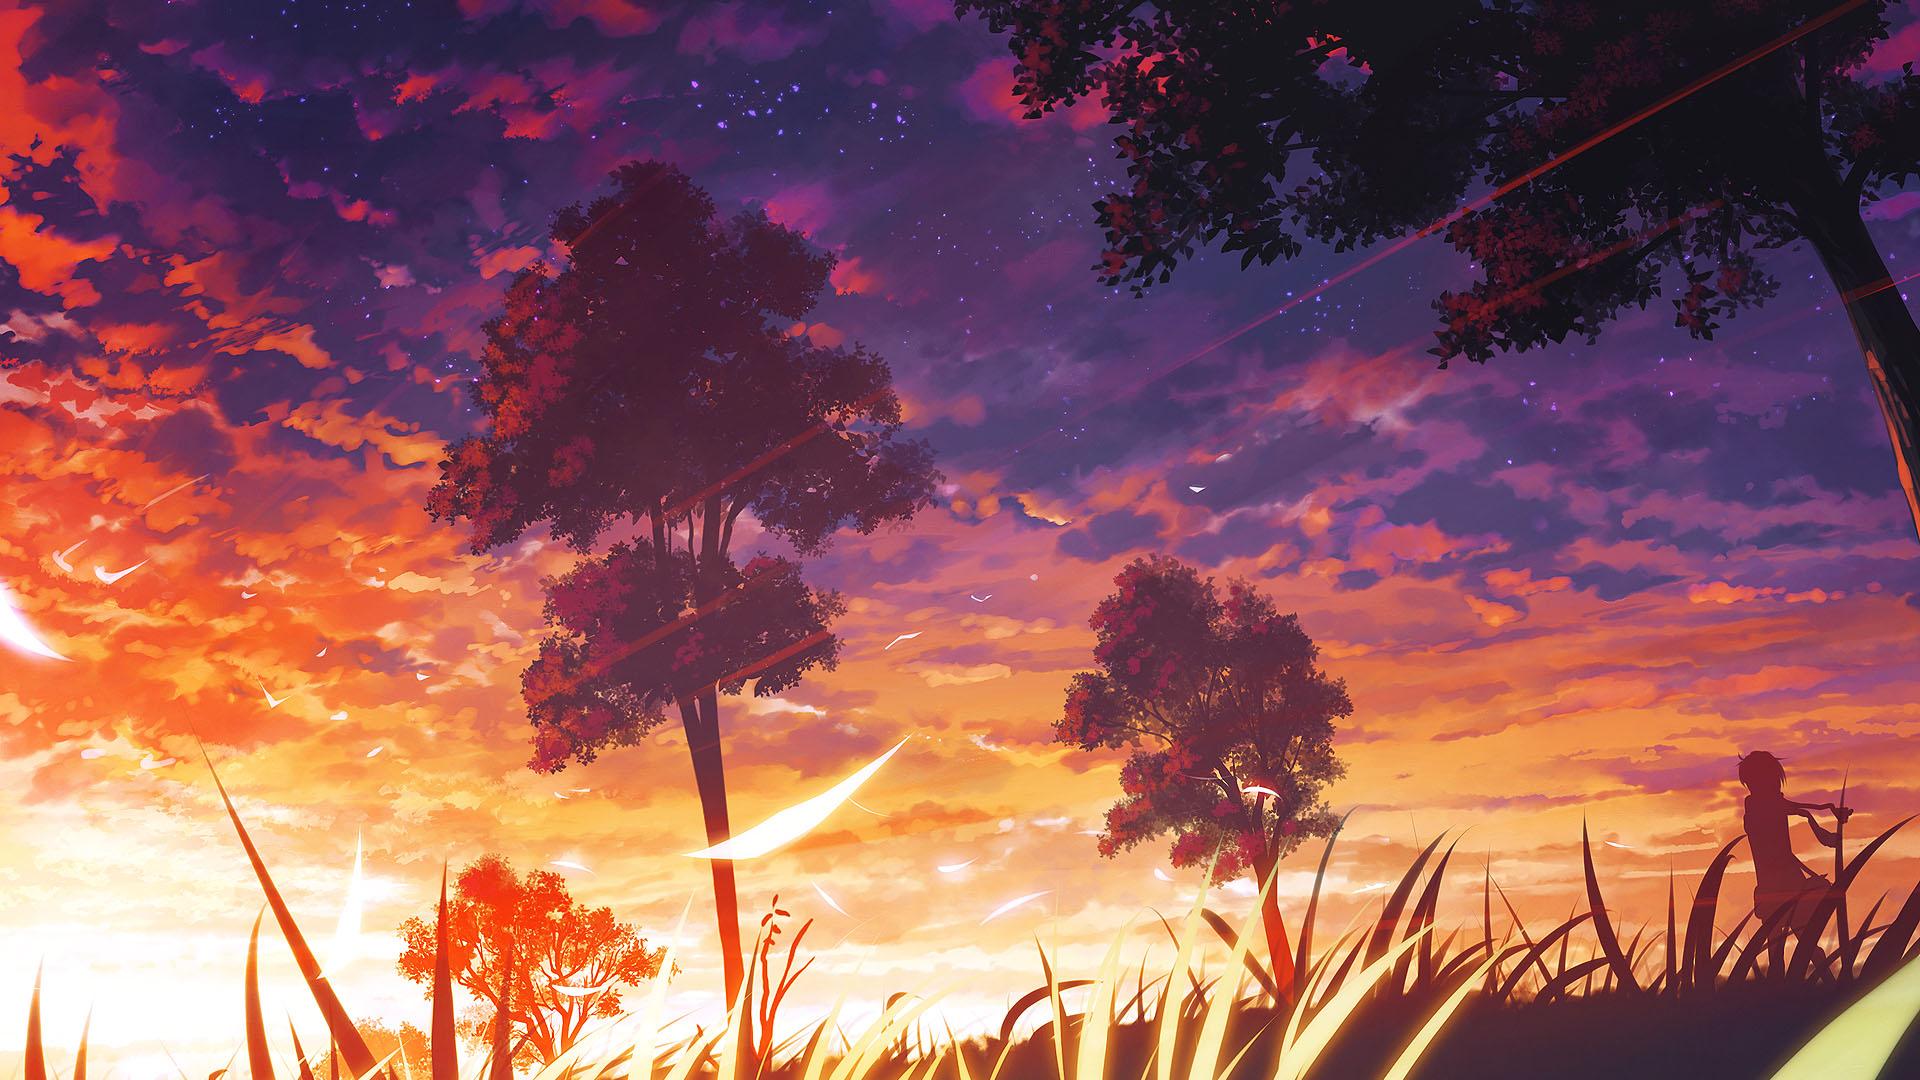 Photoshop Painting - Anime Style Burning Sunset - YouTube